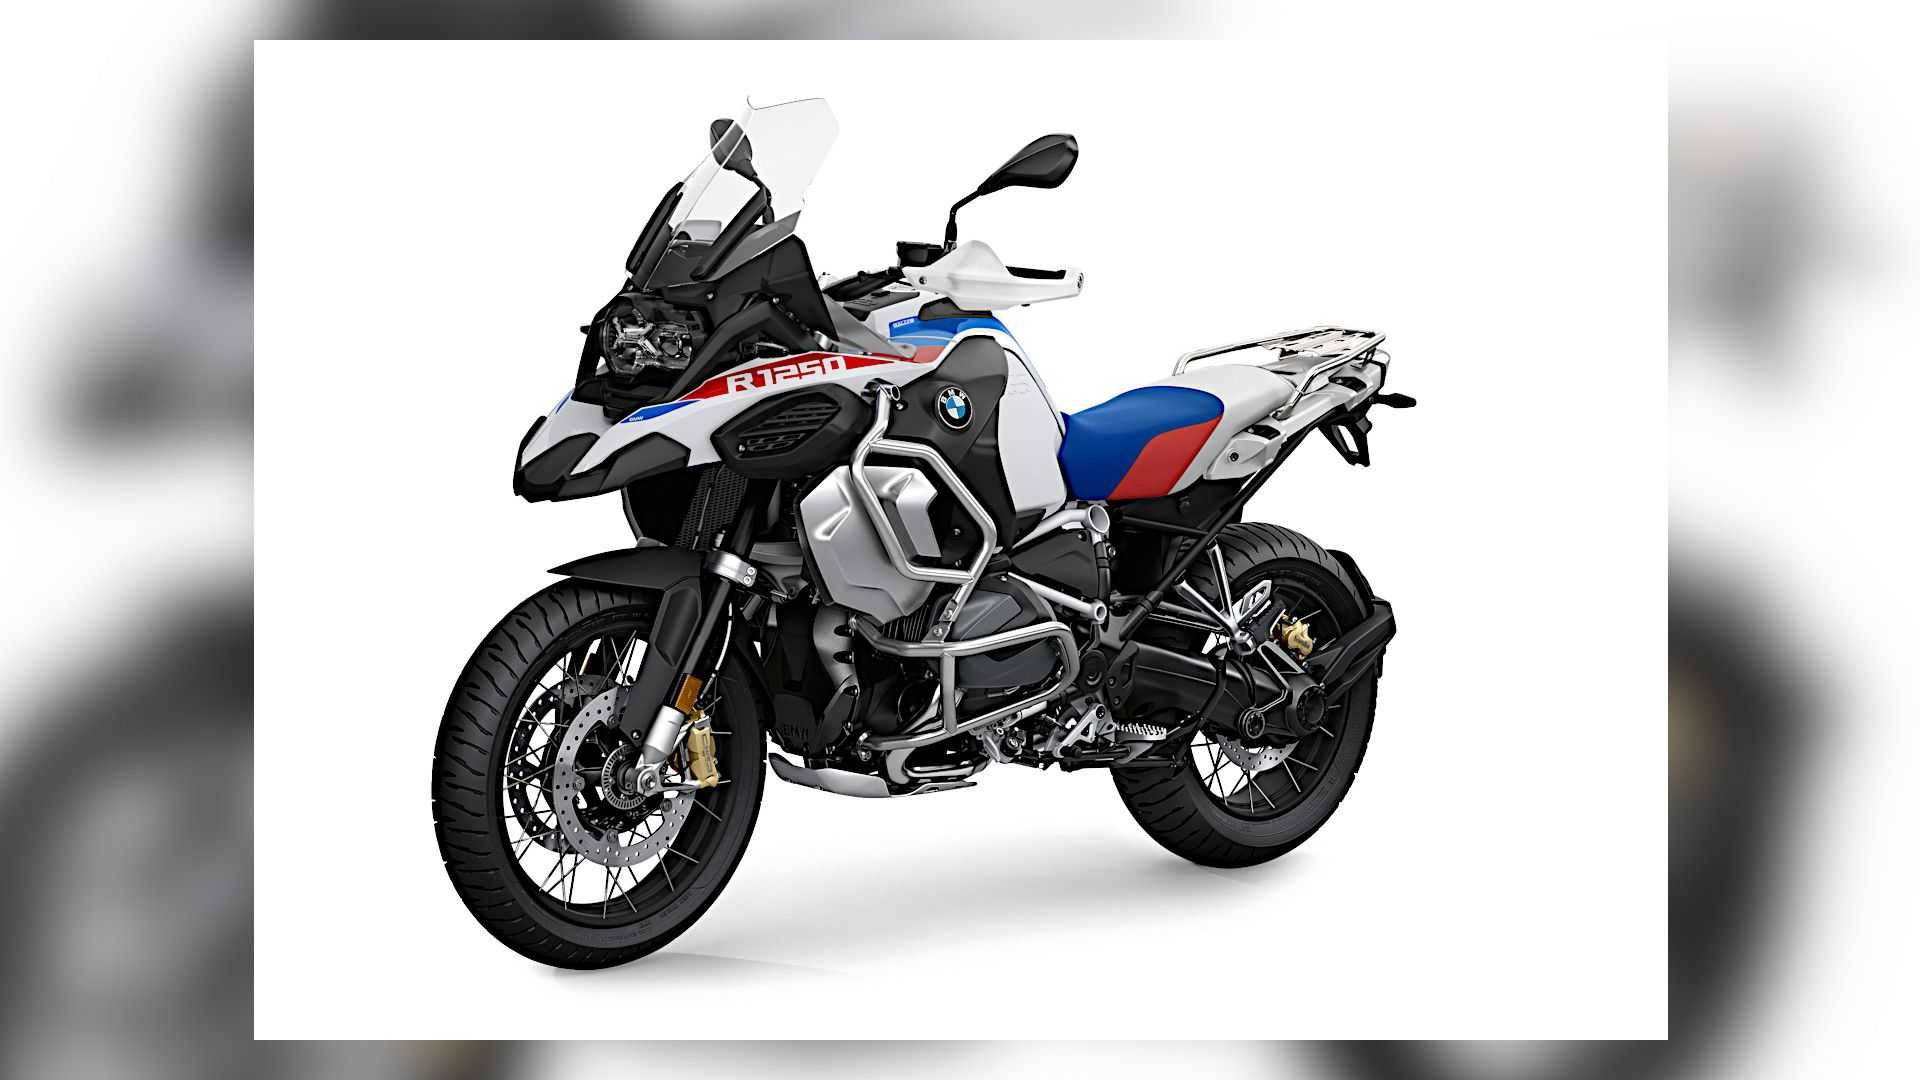 موتورسیکلت بی ام و / 2021 BMW R 1250 GS با رنگ سفید و آبی و قرمز 